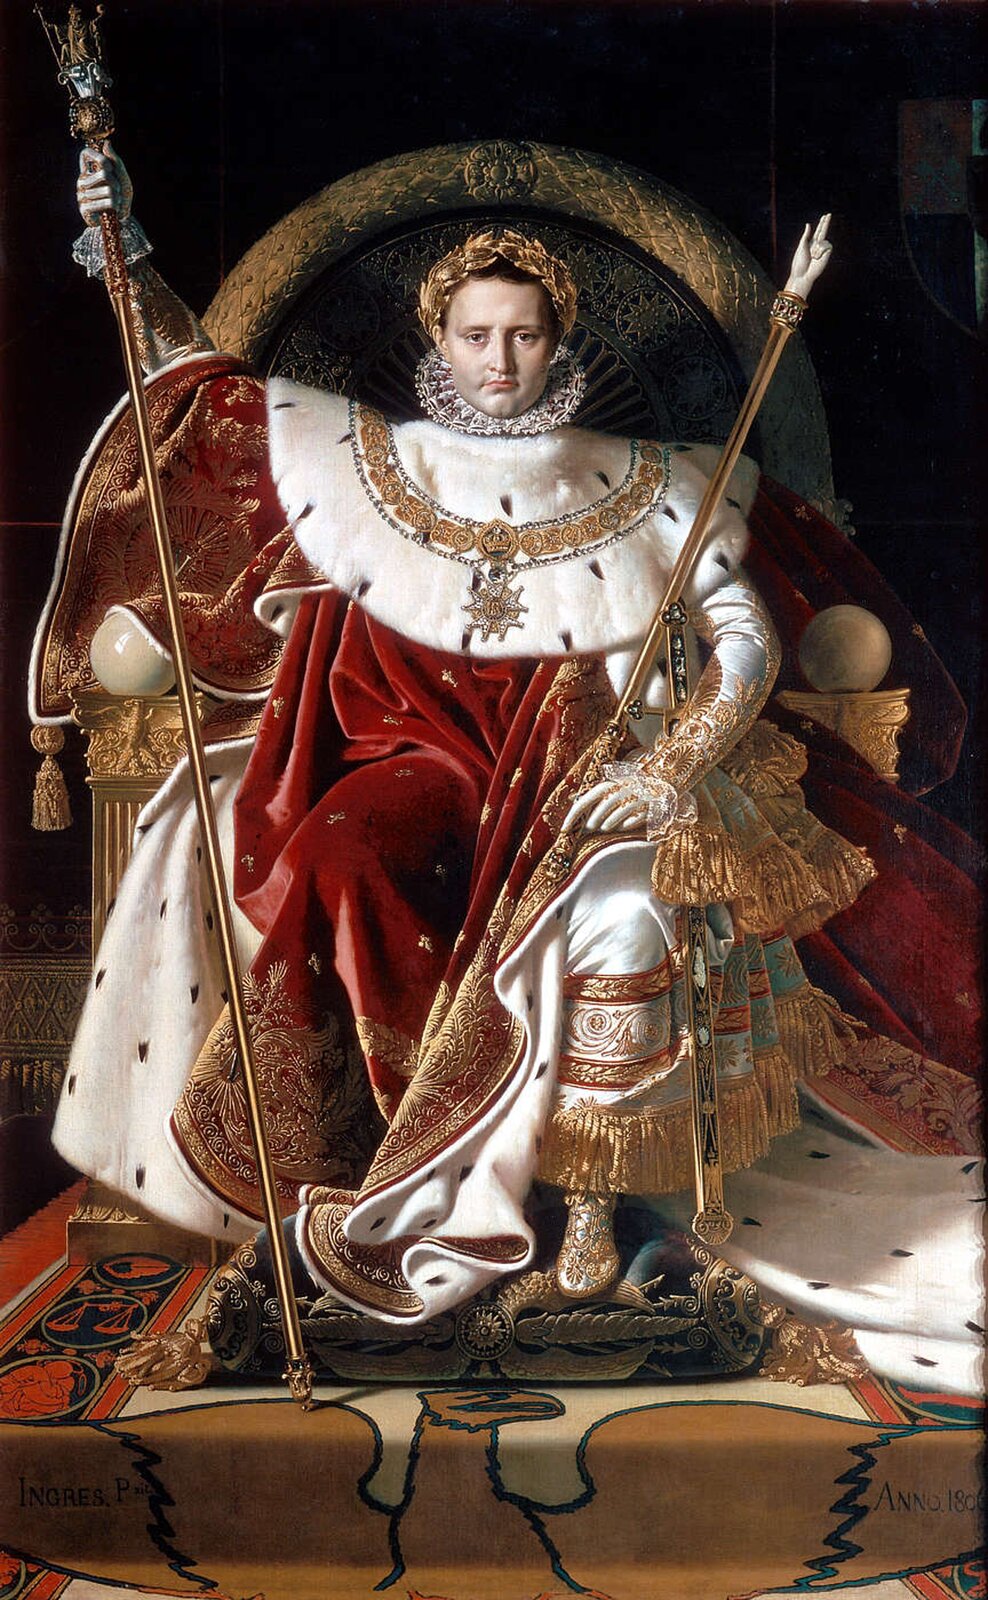 Ilustracja przedstawia obraz Jean‑Auguste‑Dominique Ingres „Napoleon na swym cesarskim tronie”. Obraz powstał w 1806 r., dwa lata po koronacji Napoleona na cesarza. Ingres przedstawiając cesarza na tronie, nawiązał do tradycji starożytnego Rzymu. Napoleon trzyma w dłoniach regalia (symbole władzy królewskiej), „rękę sprawiedliwości”, która miała należeć do Karola Wielkiego oraz miecz koronacyjny. Na głowie władcy zamiast korony spoczywa wieniec z liści laurowych.